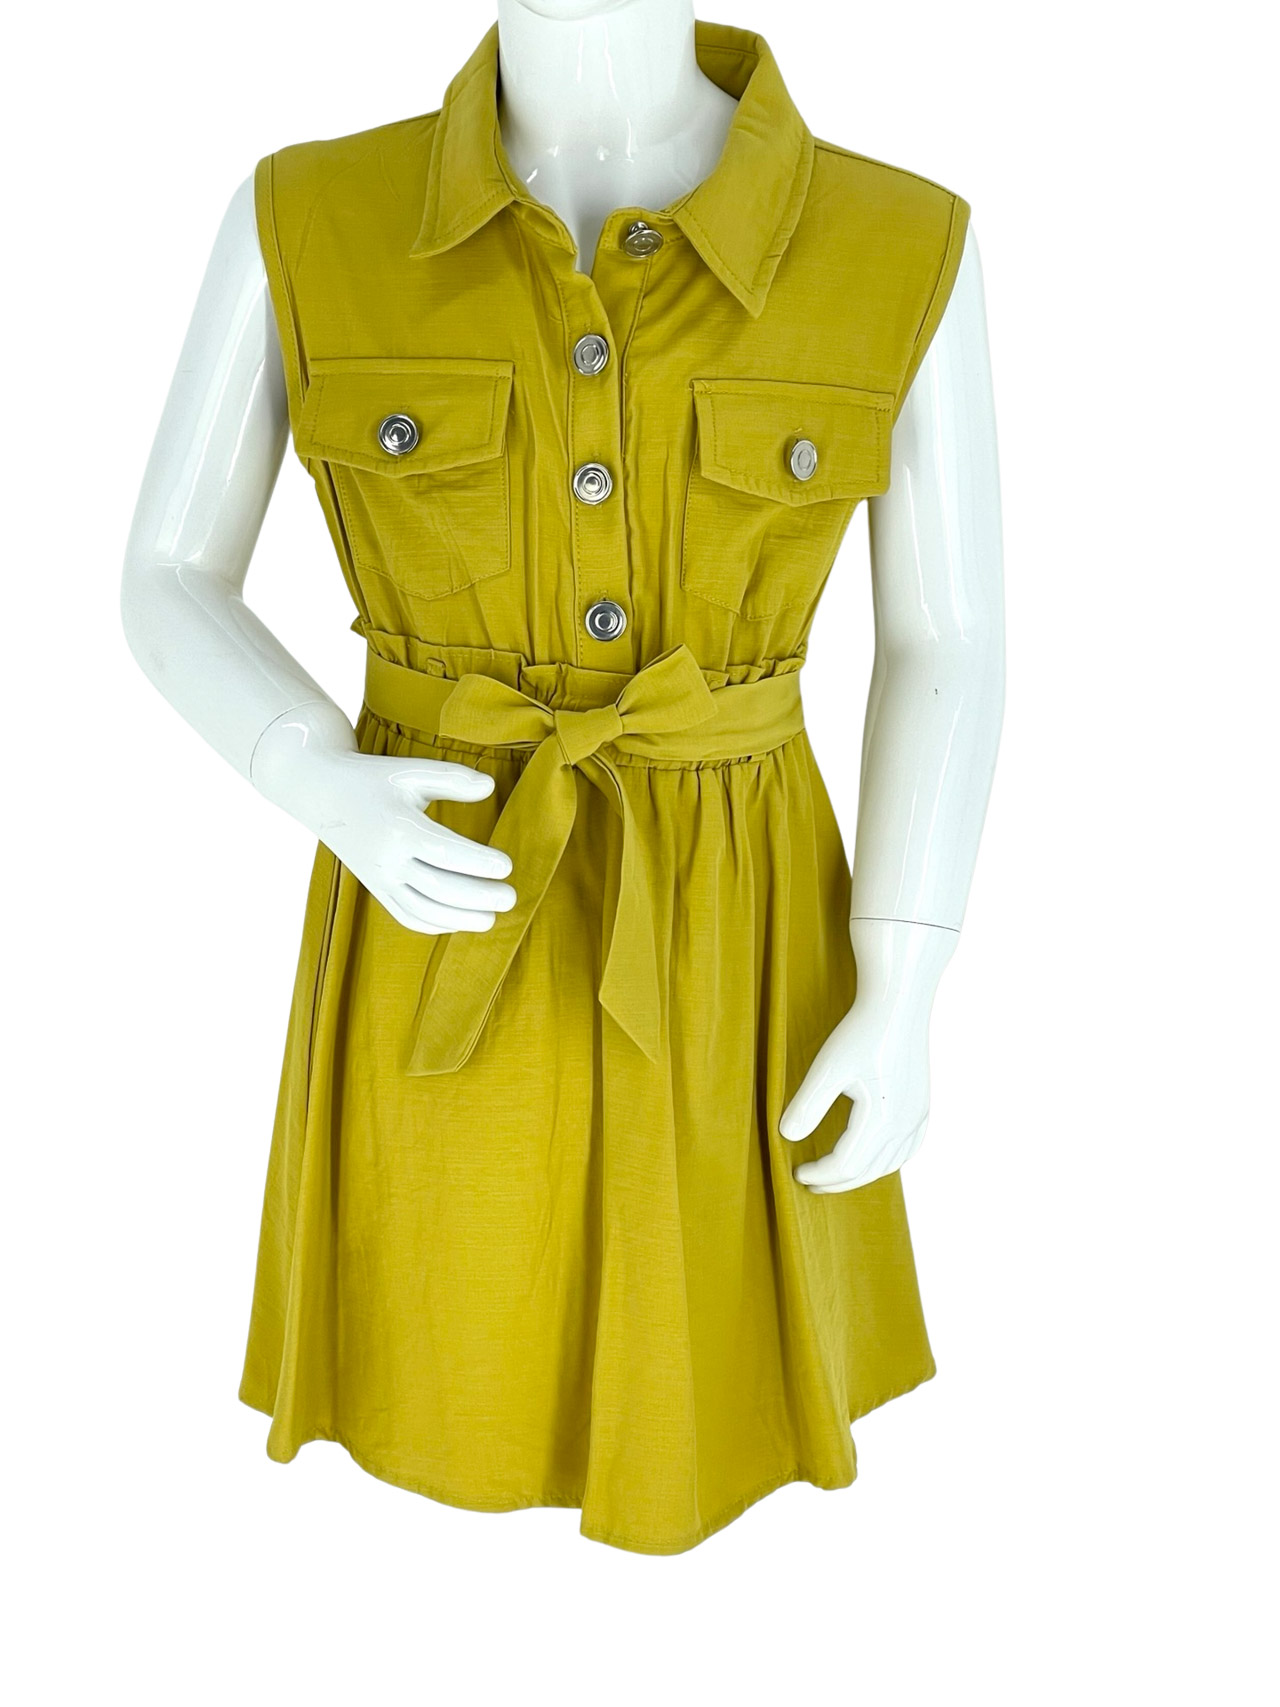 Φόρεμα κορίτσι αμάνικο με γιακά κωδ. Q5025 μπροστινή όψη